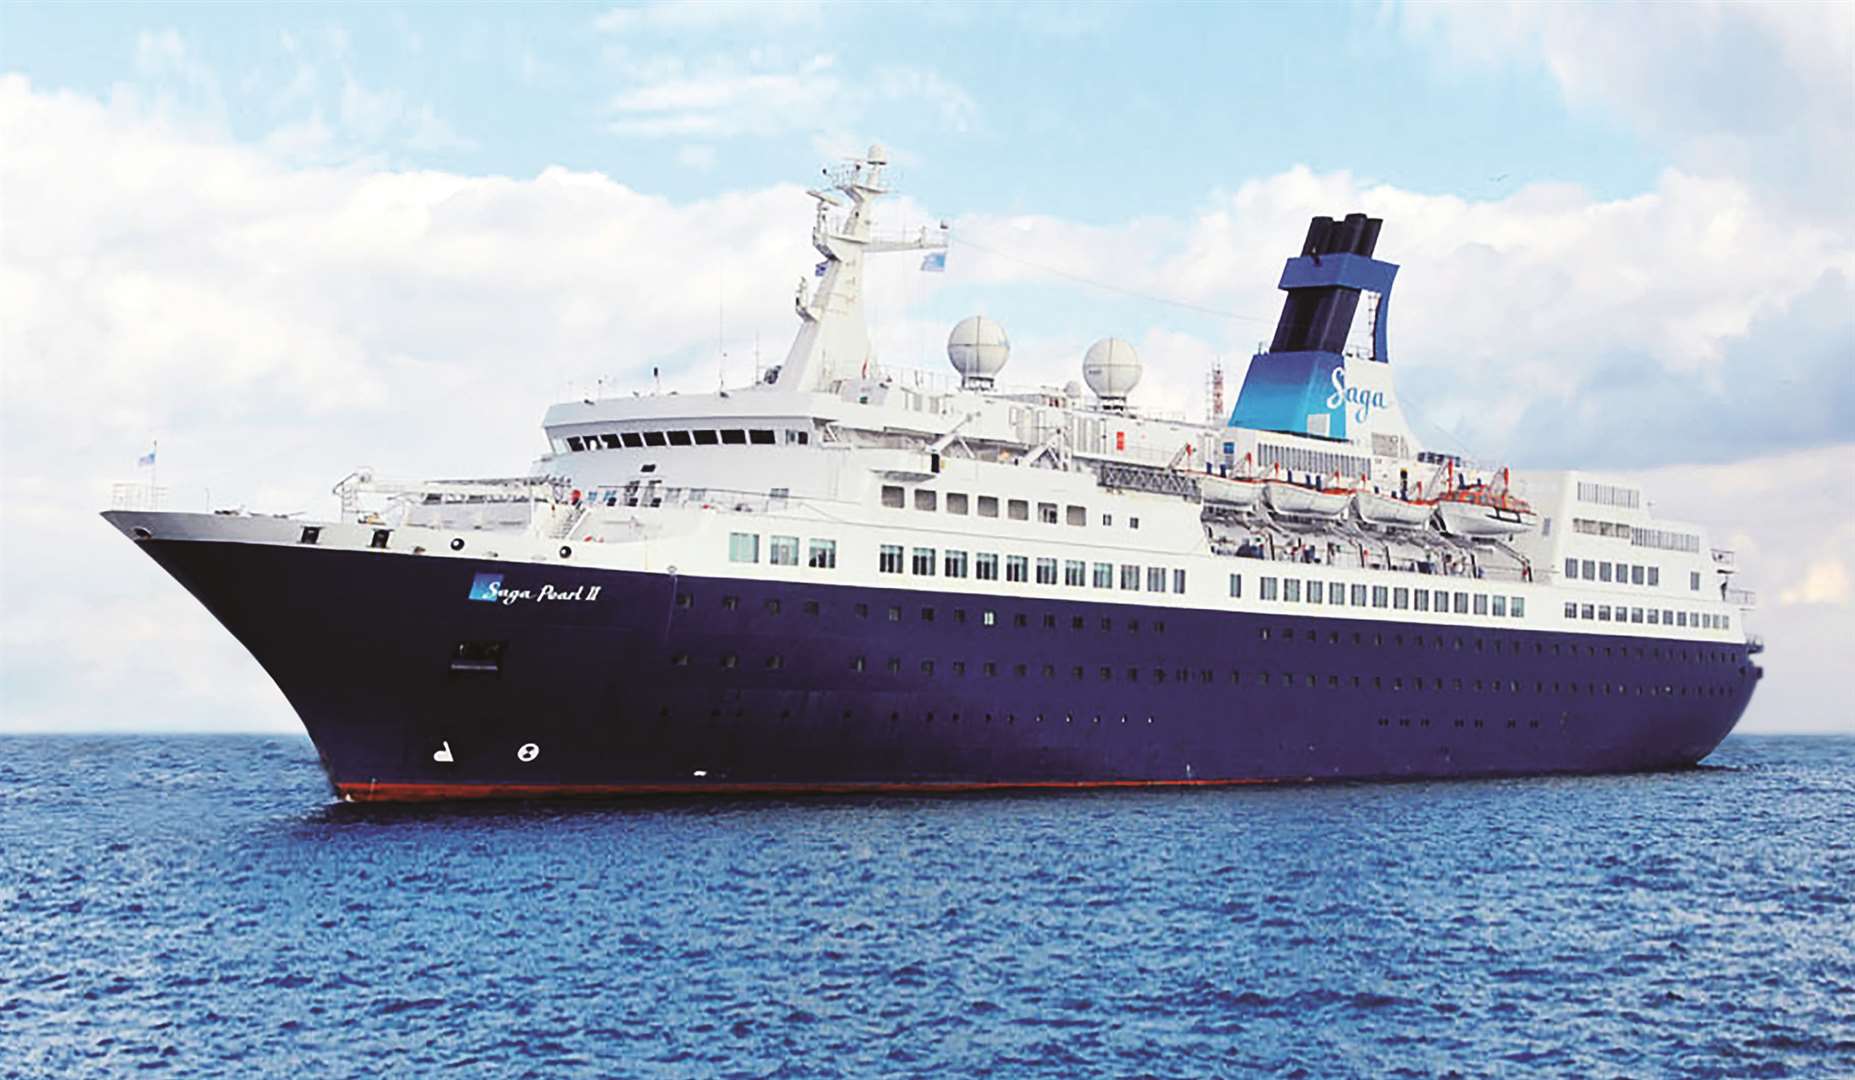 Cruise ship the Saga Pearl II